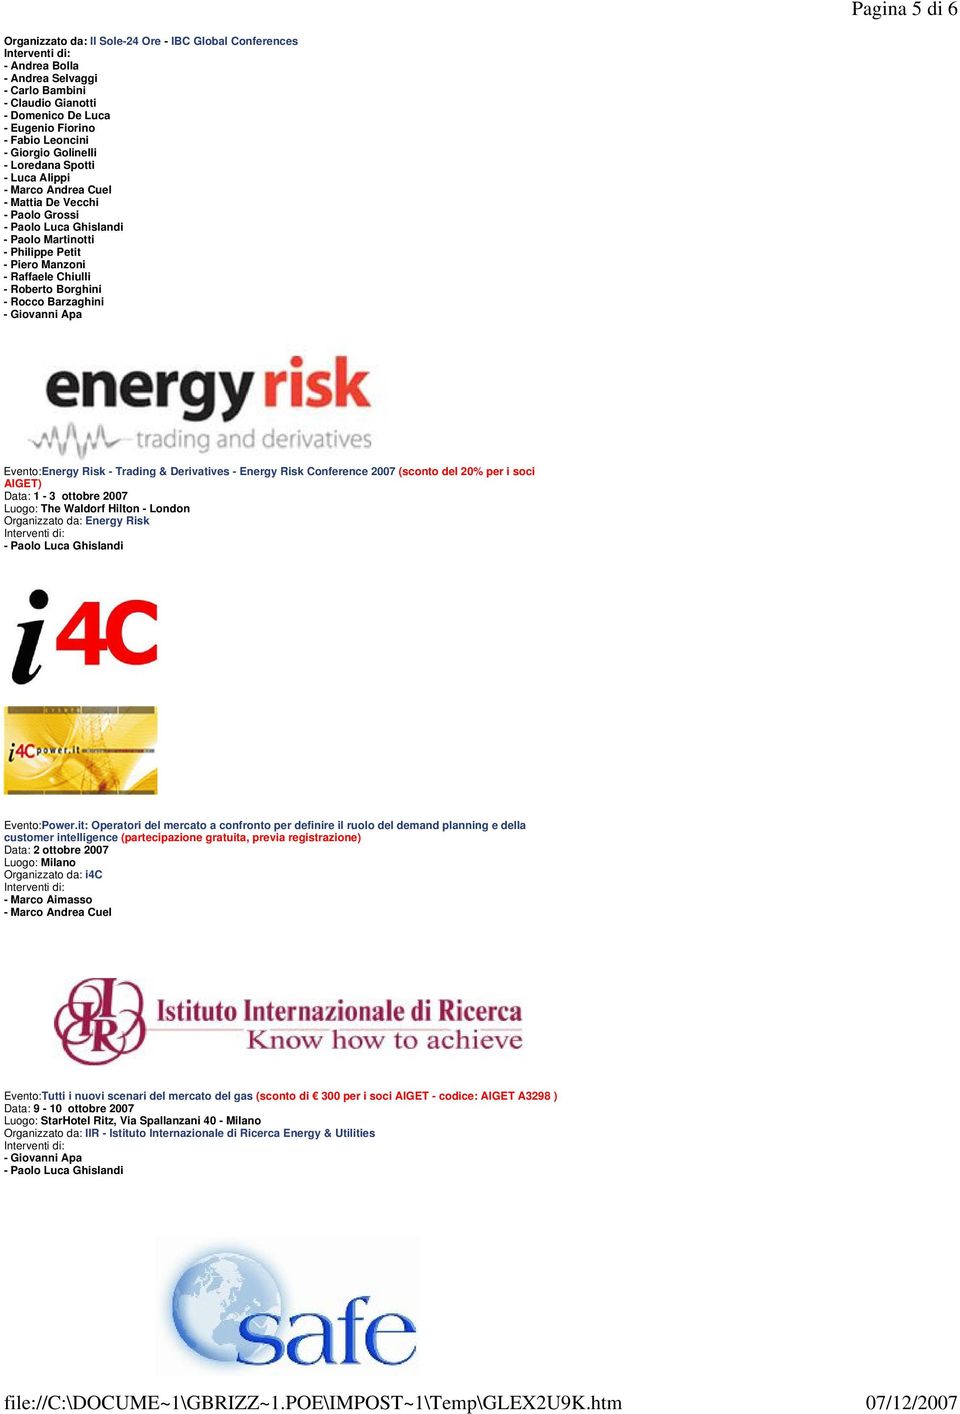 Derivatives - Energy Risk Conference 2007 (sconto del 20% per i soci AIGET) Data: 1-3 ottobre 2007 Luogo: The Waldorf Hilton - London Organizzato da: Energy Risk Evento:Power.